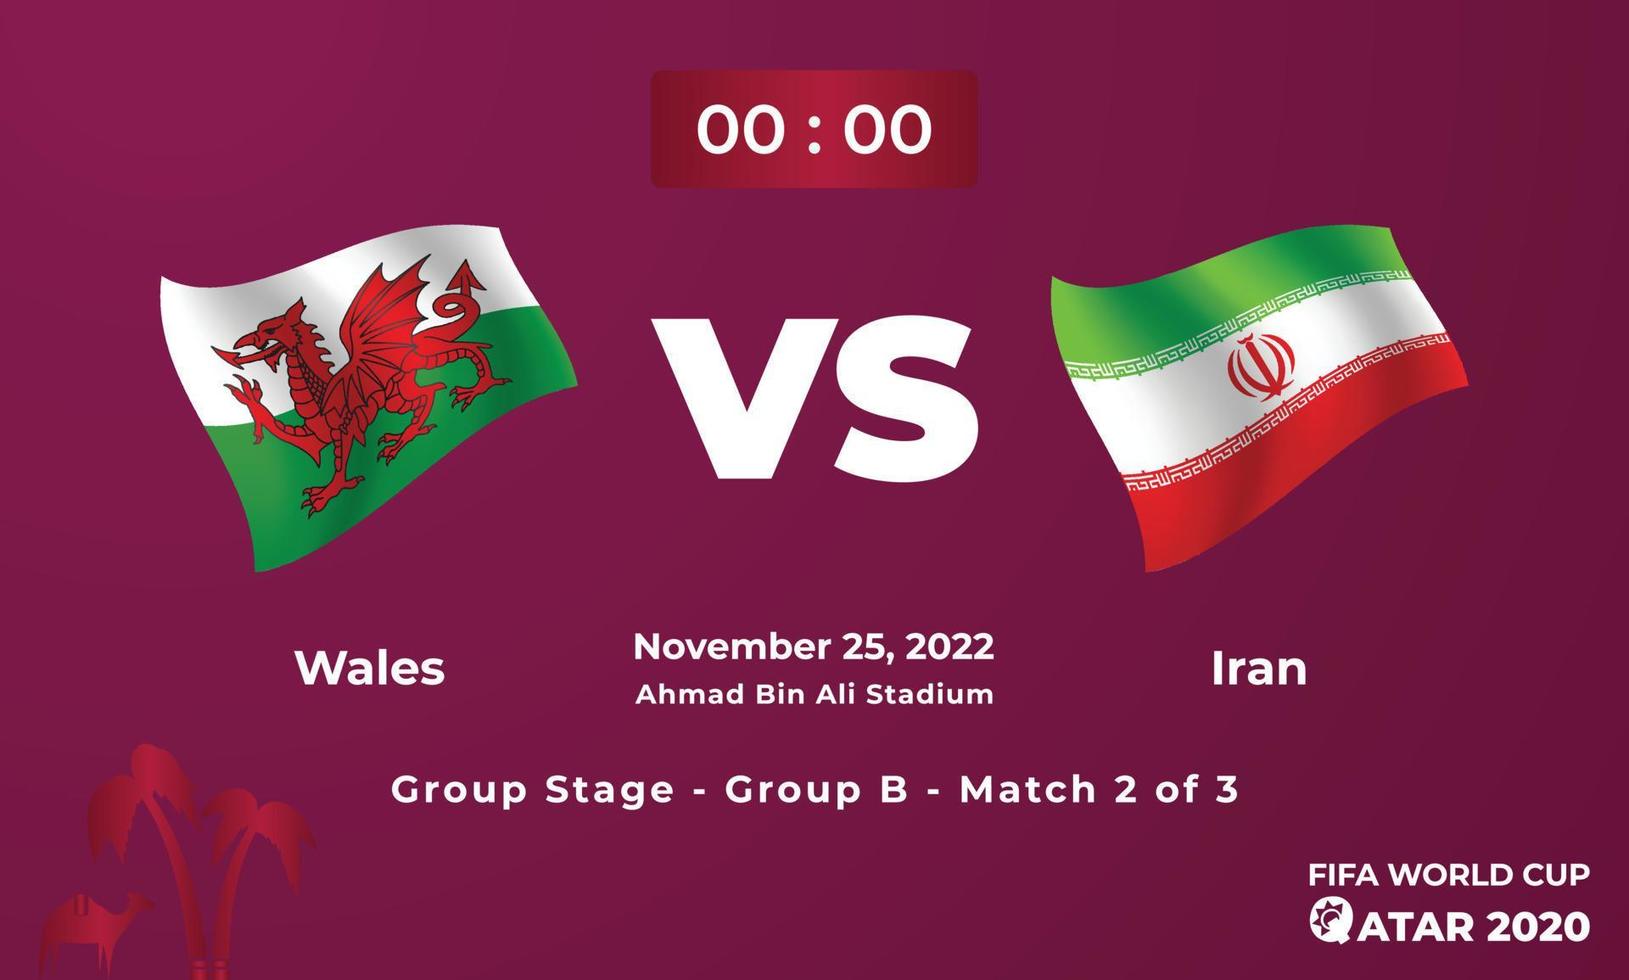 wales mot iran fotboll matchmall, fifa värld kopp i qatar 2022 vektor